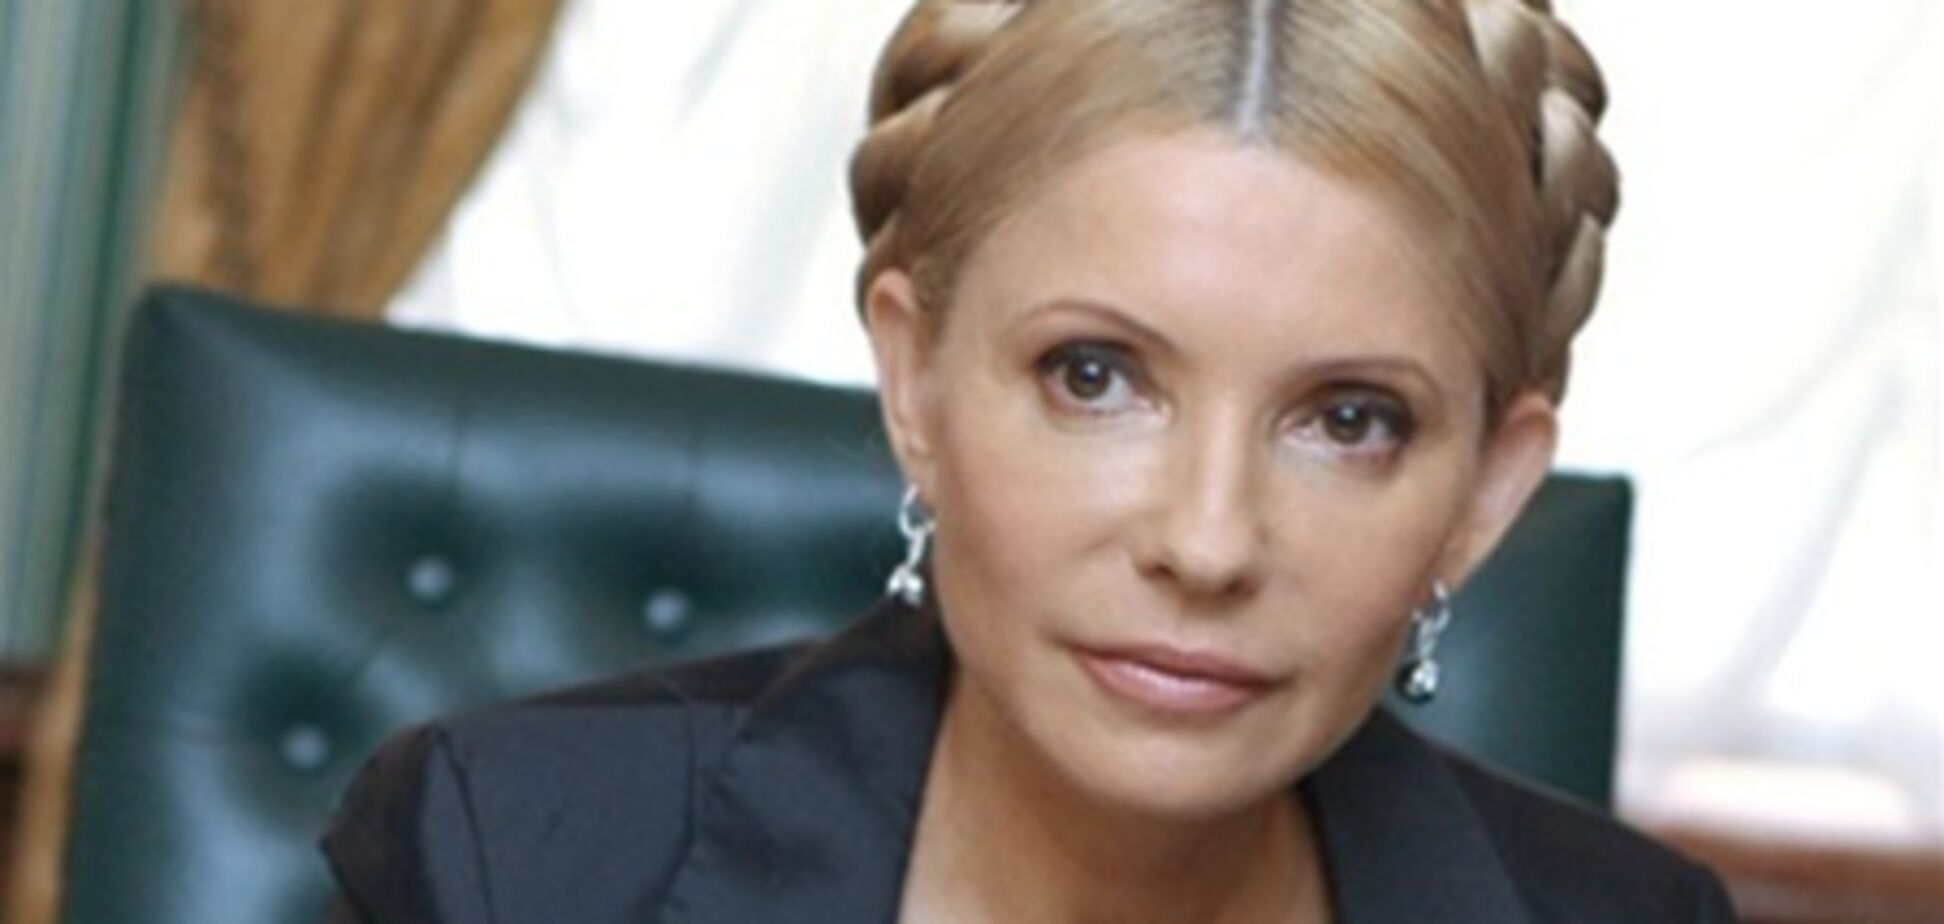 ПР: Україна вже виконала рішення ЄСПЛ у справі Тимошенко